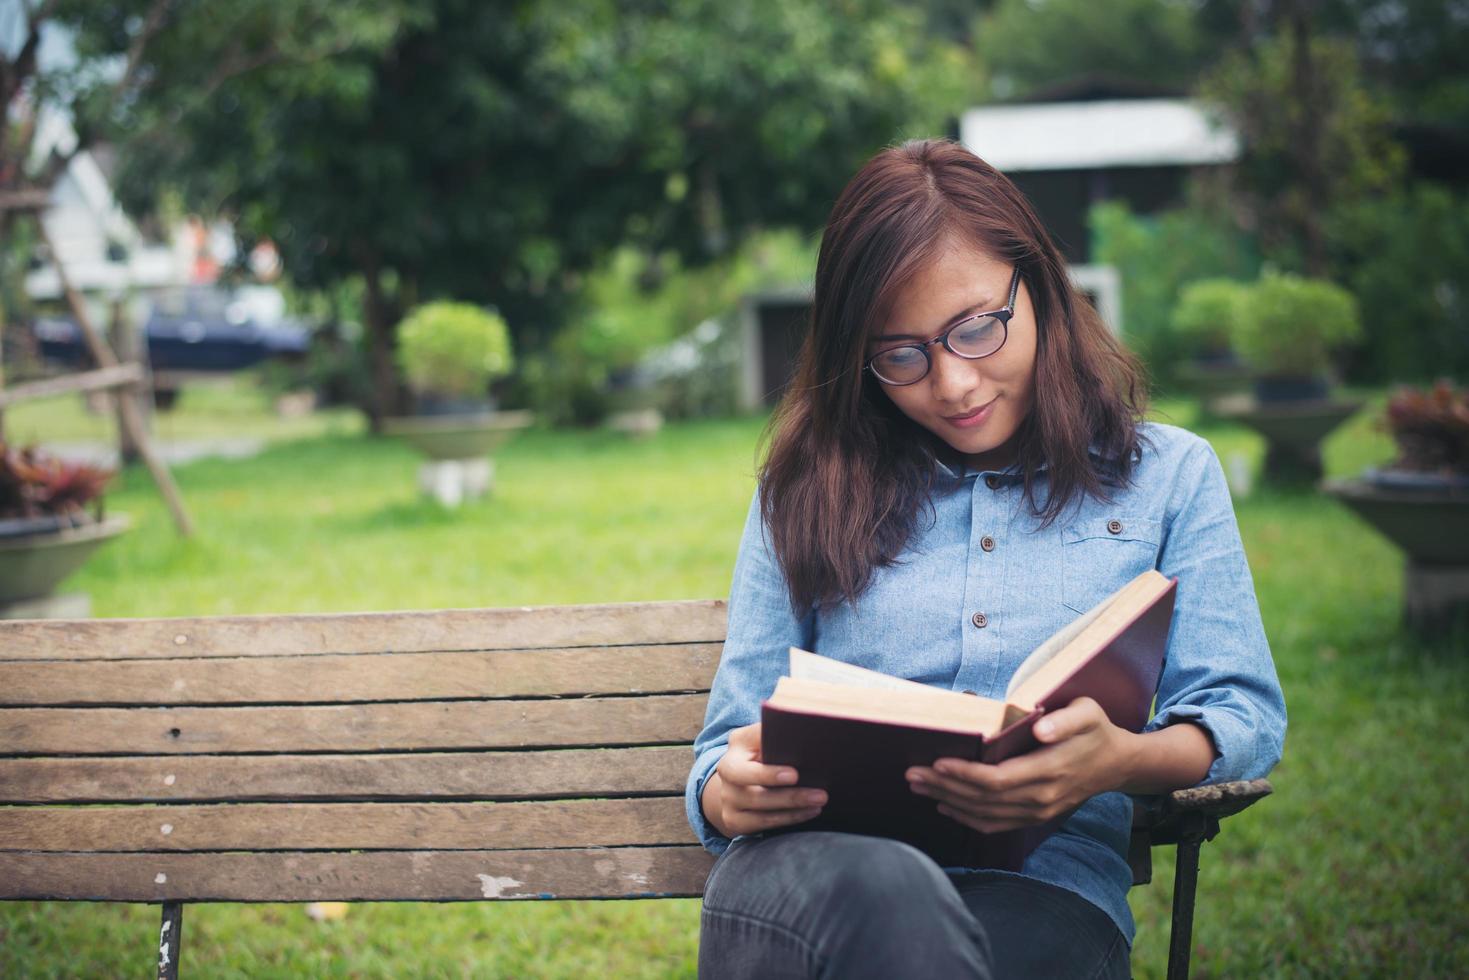 garota encantadora hipster relaxando no parque enquanto lê o livro, aprecia a natureza ao redor. foto